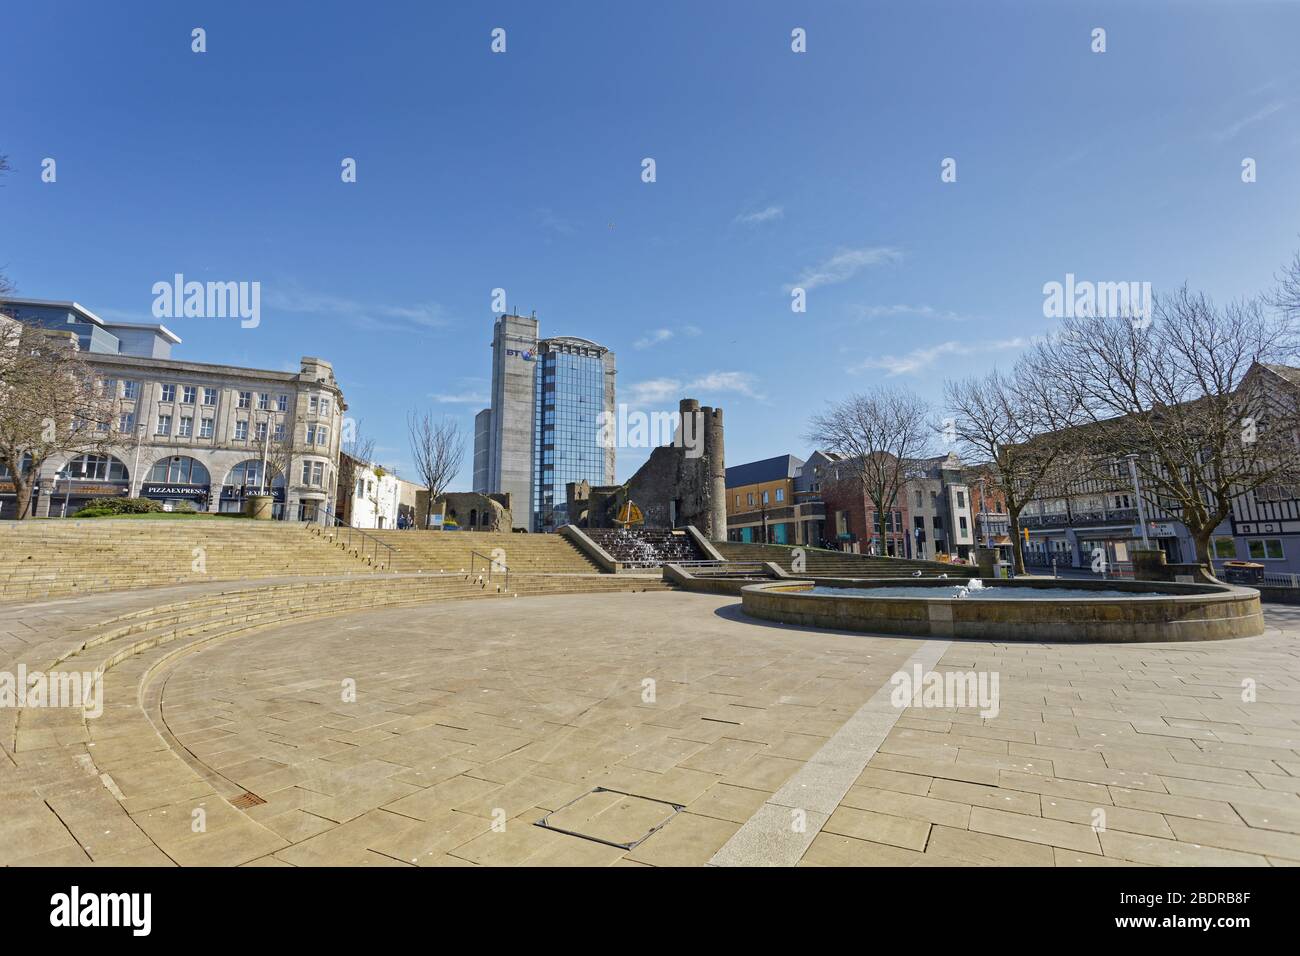 Bild: Castle Square ist im Stadtzentrum von Swansea, Wales, Großbritannien, verlassen. Sonntag 22 März 2020 Re: Covid-19 Coronavirus Pandemie, UK. Stockfoto